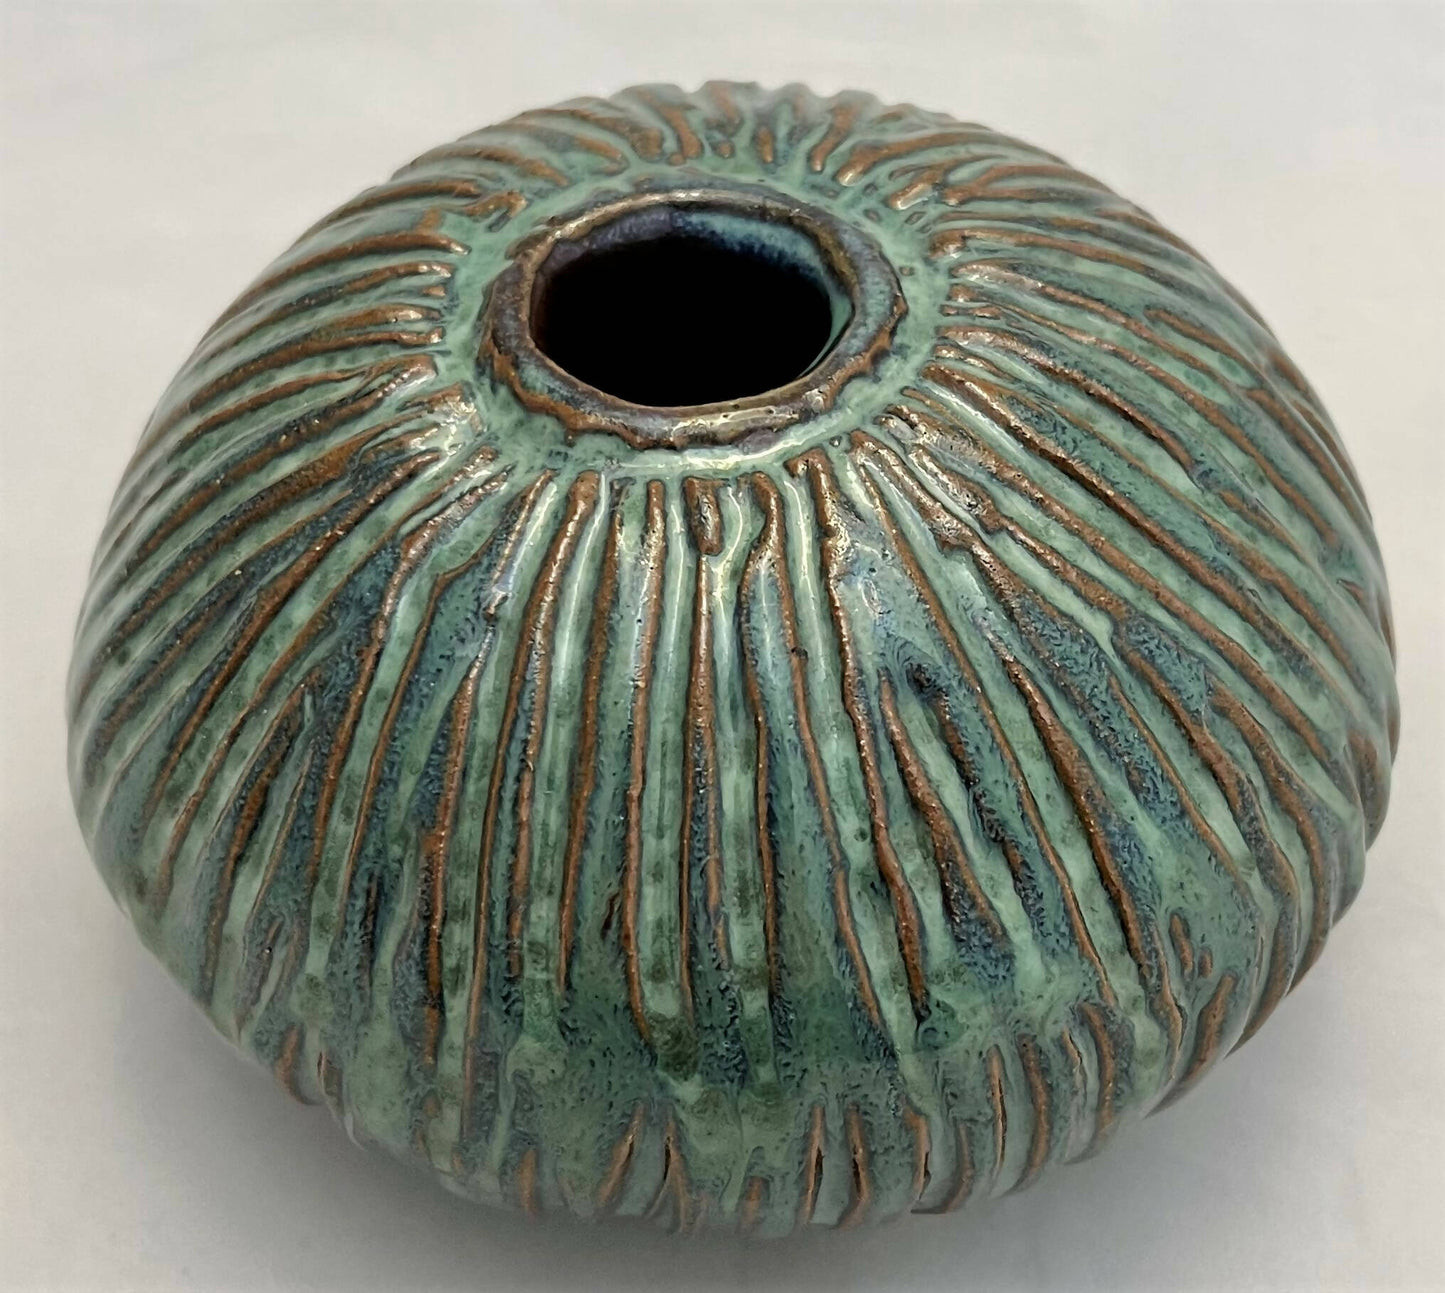 carved blue meditation bowl "Safe"